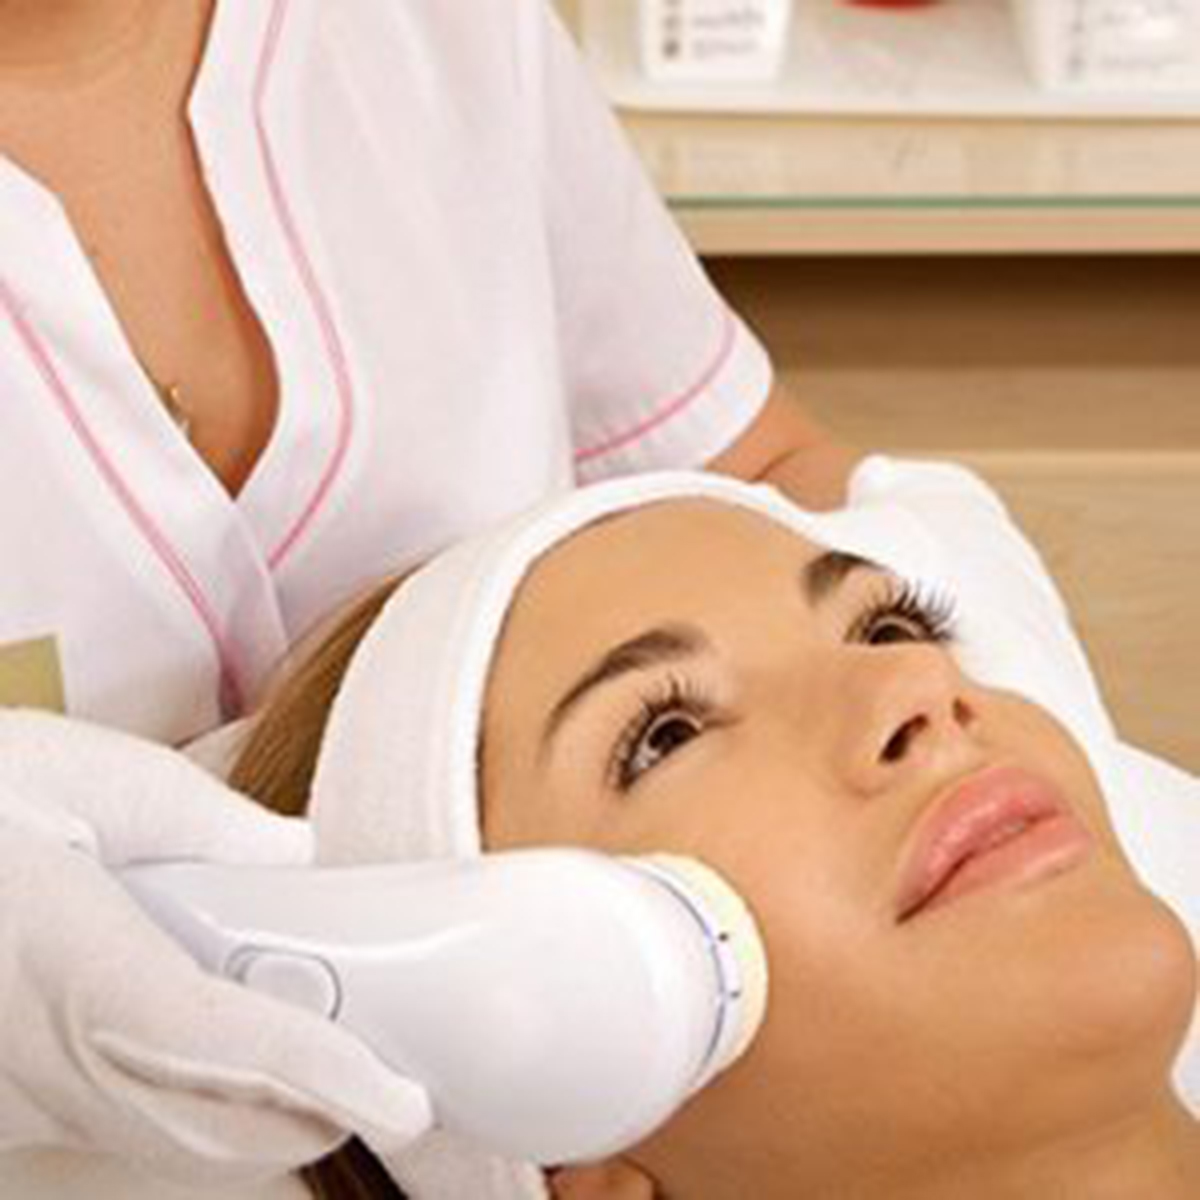 Facial rejuvenation services